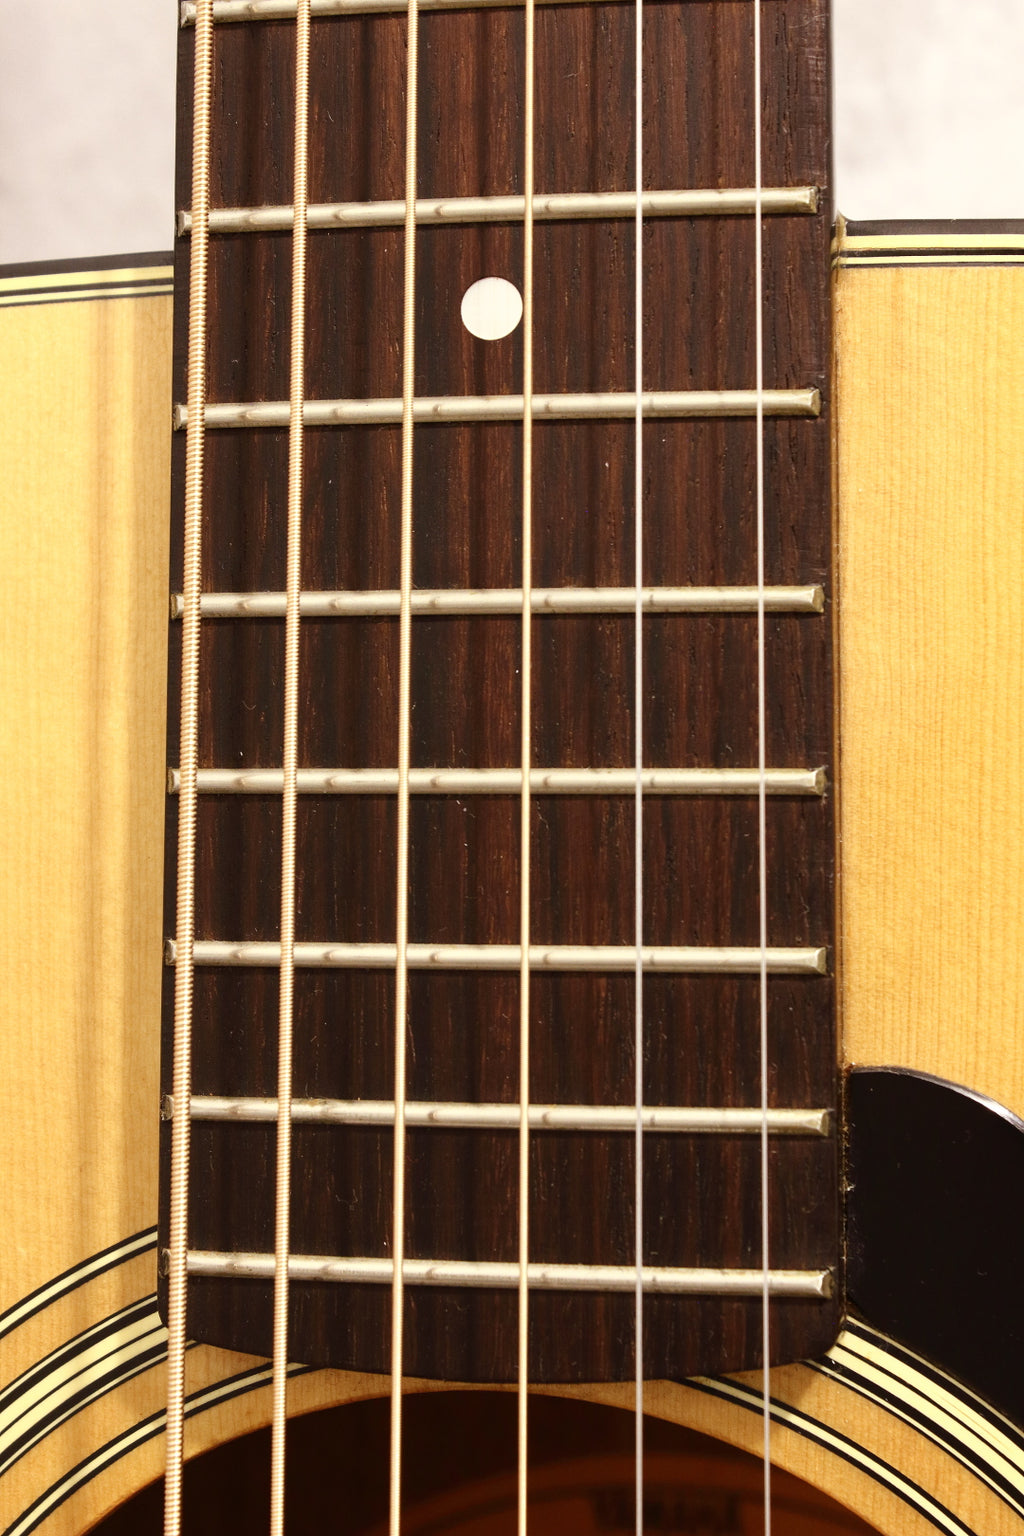 Yamaha FG-152B Folk Size Acoustic 1979